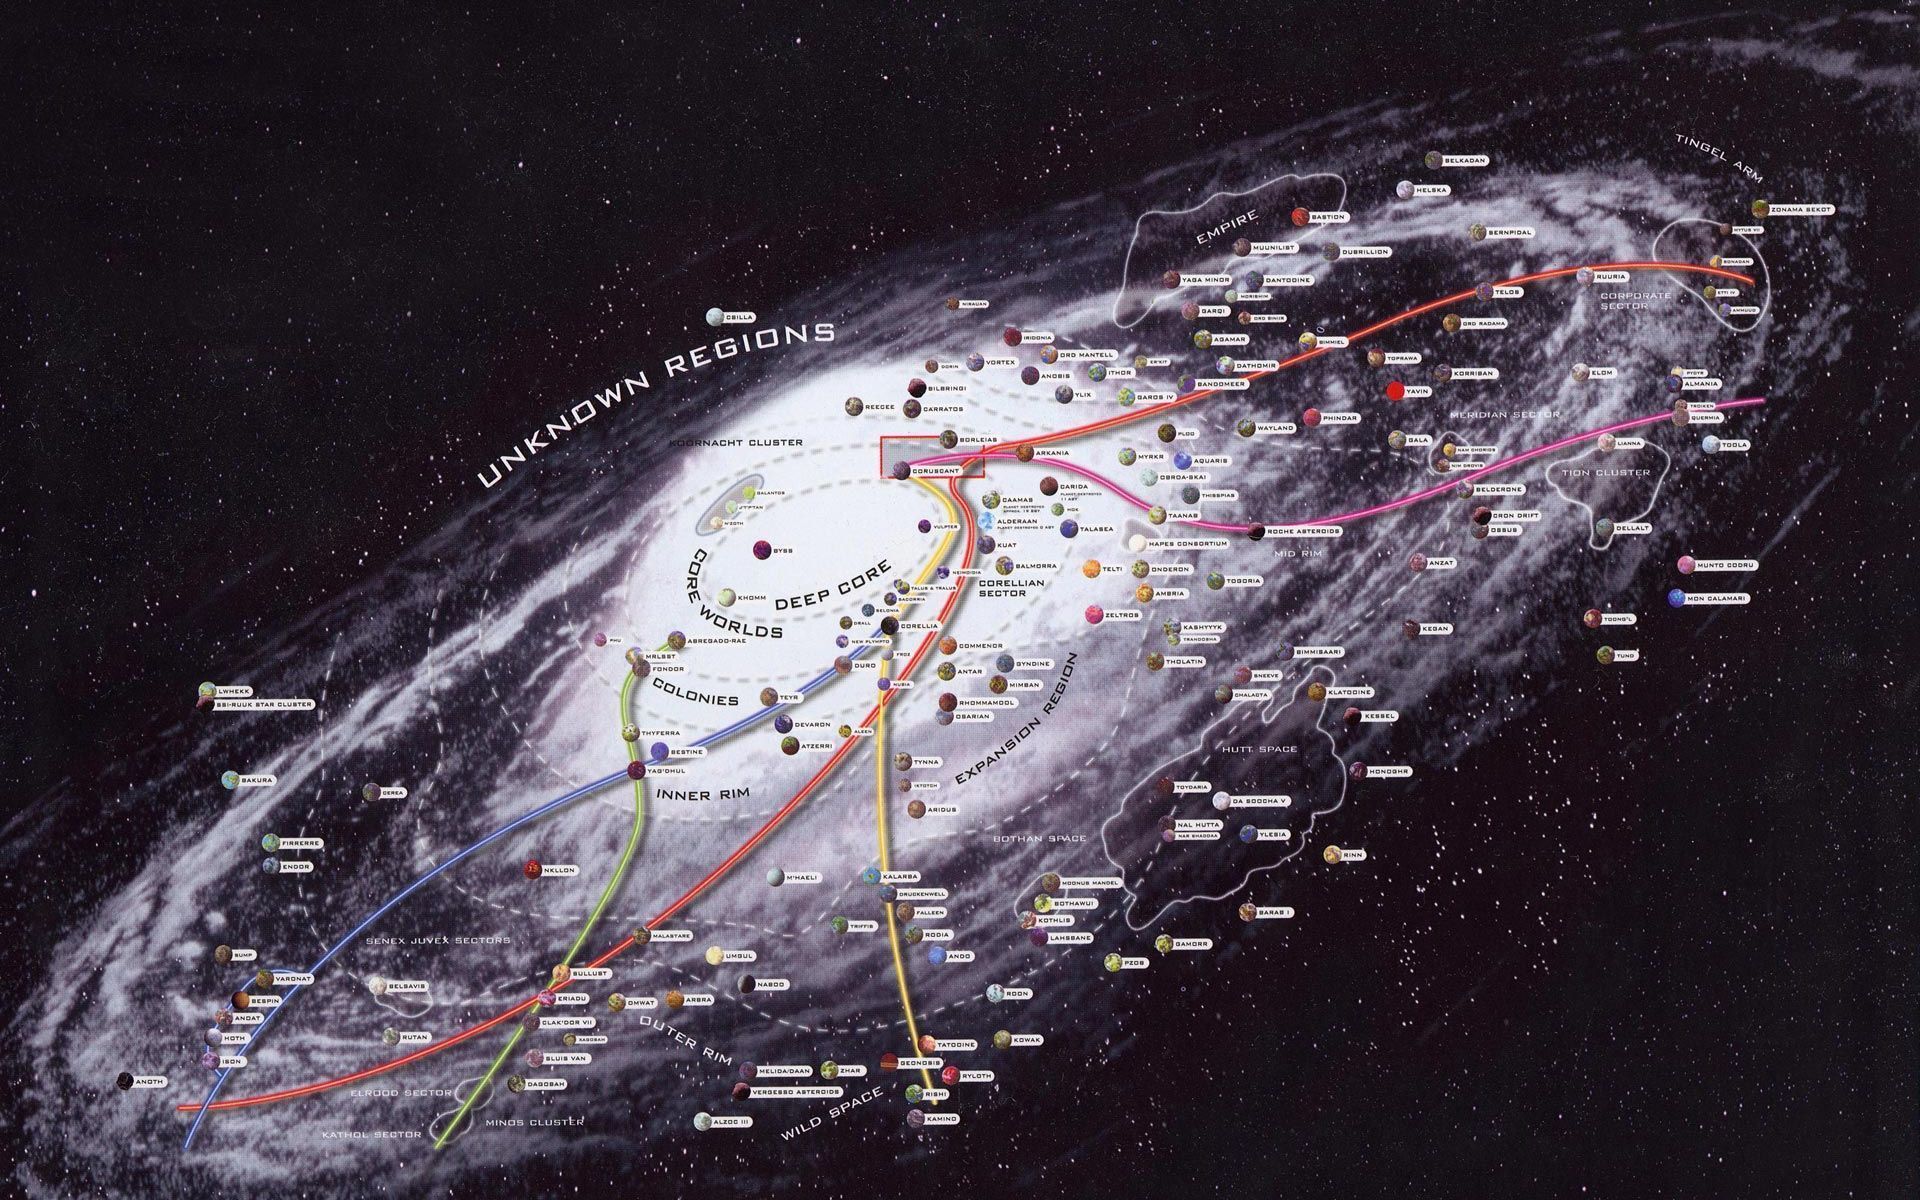 Star Wars Galaxy Map Wallpaper | 1920x1200 | ID:18824